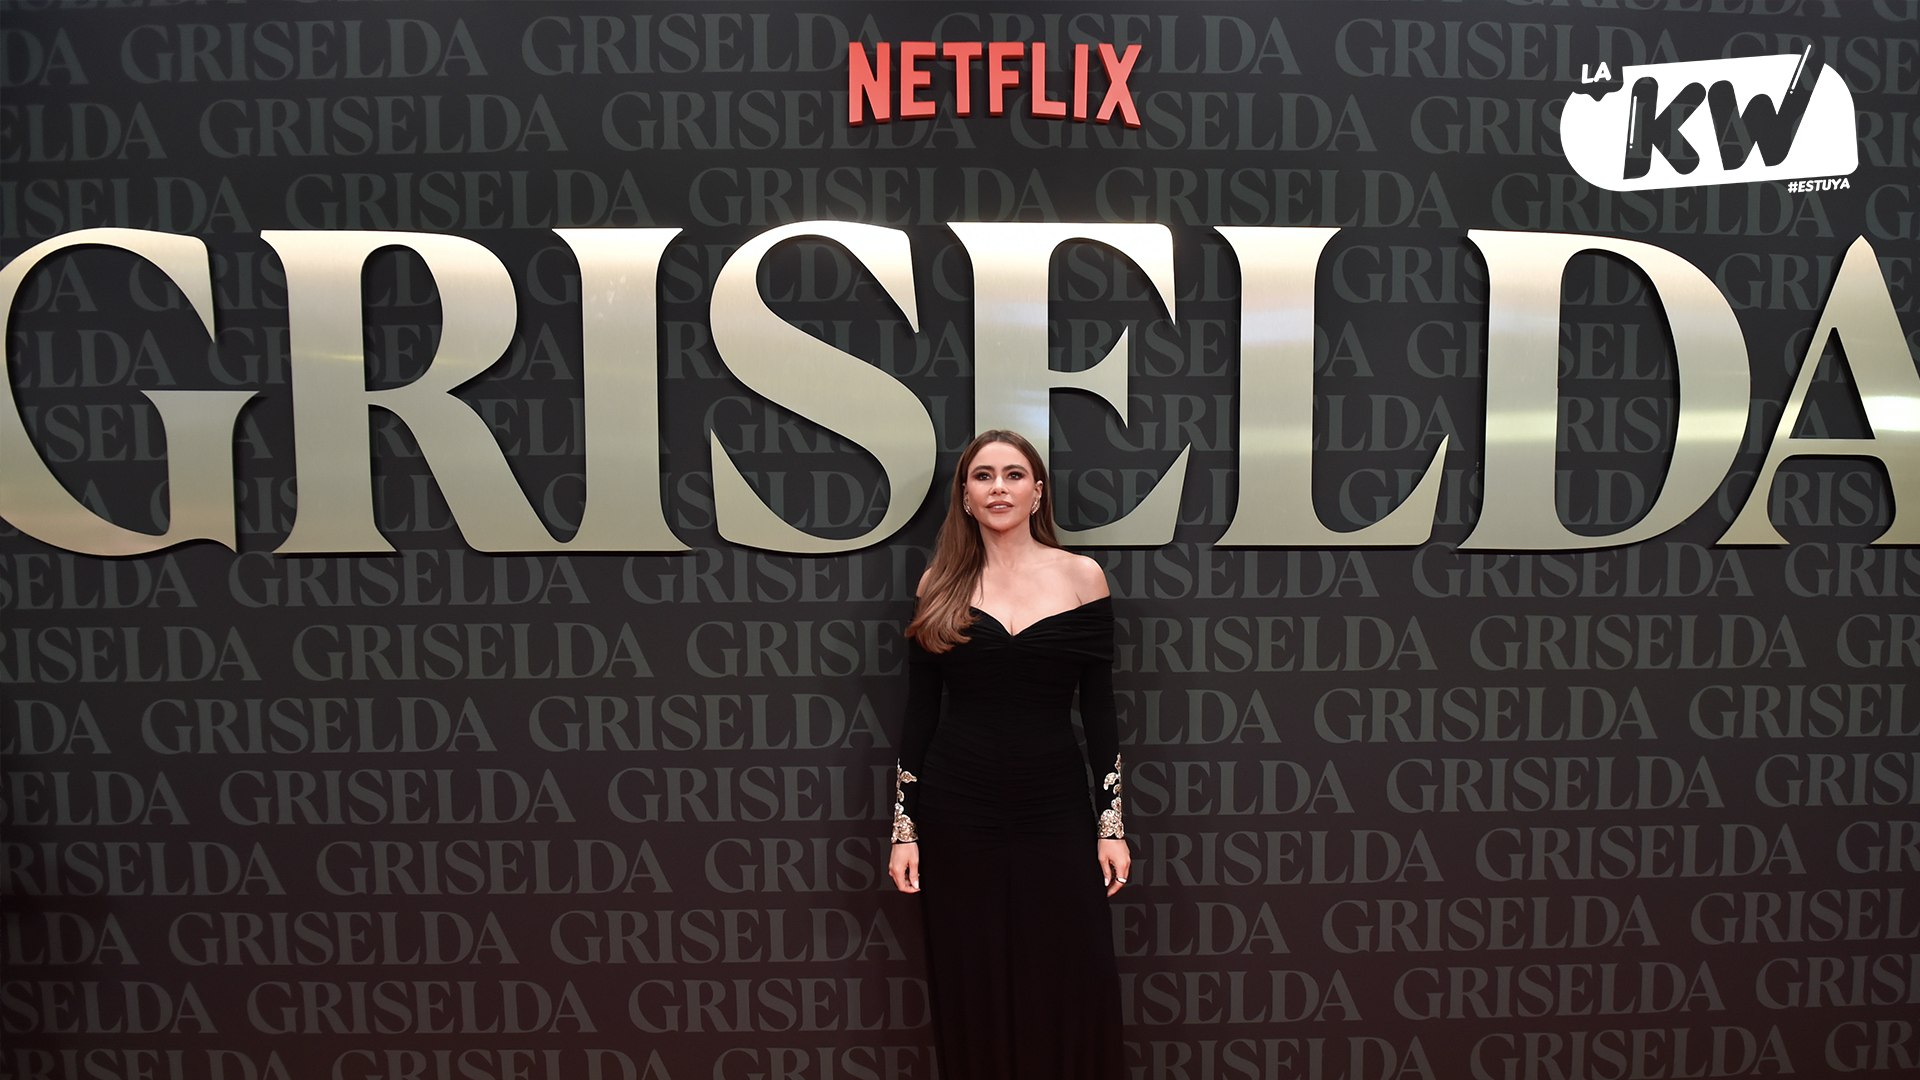 ⁣Sofía Vergara deslumbra en la gran premiere de “Griselda”: una noche inolvidable de estilo y emoción